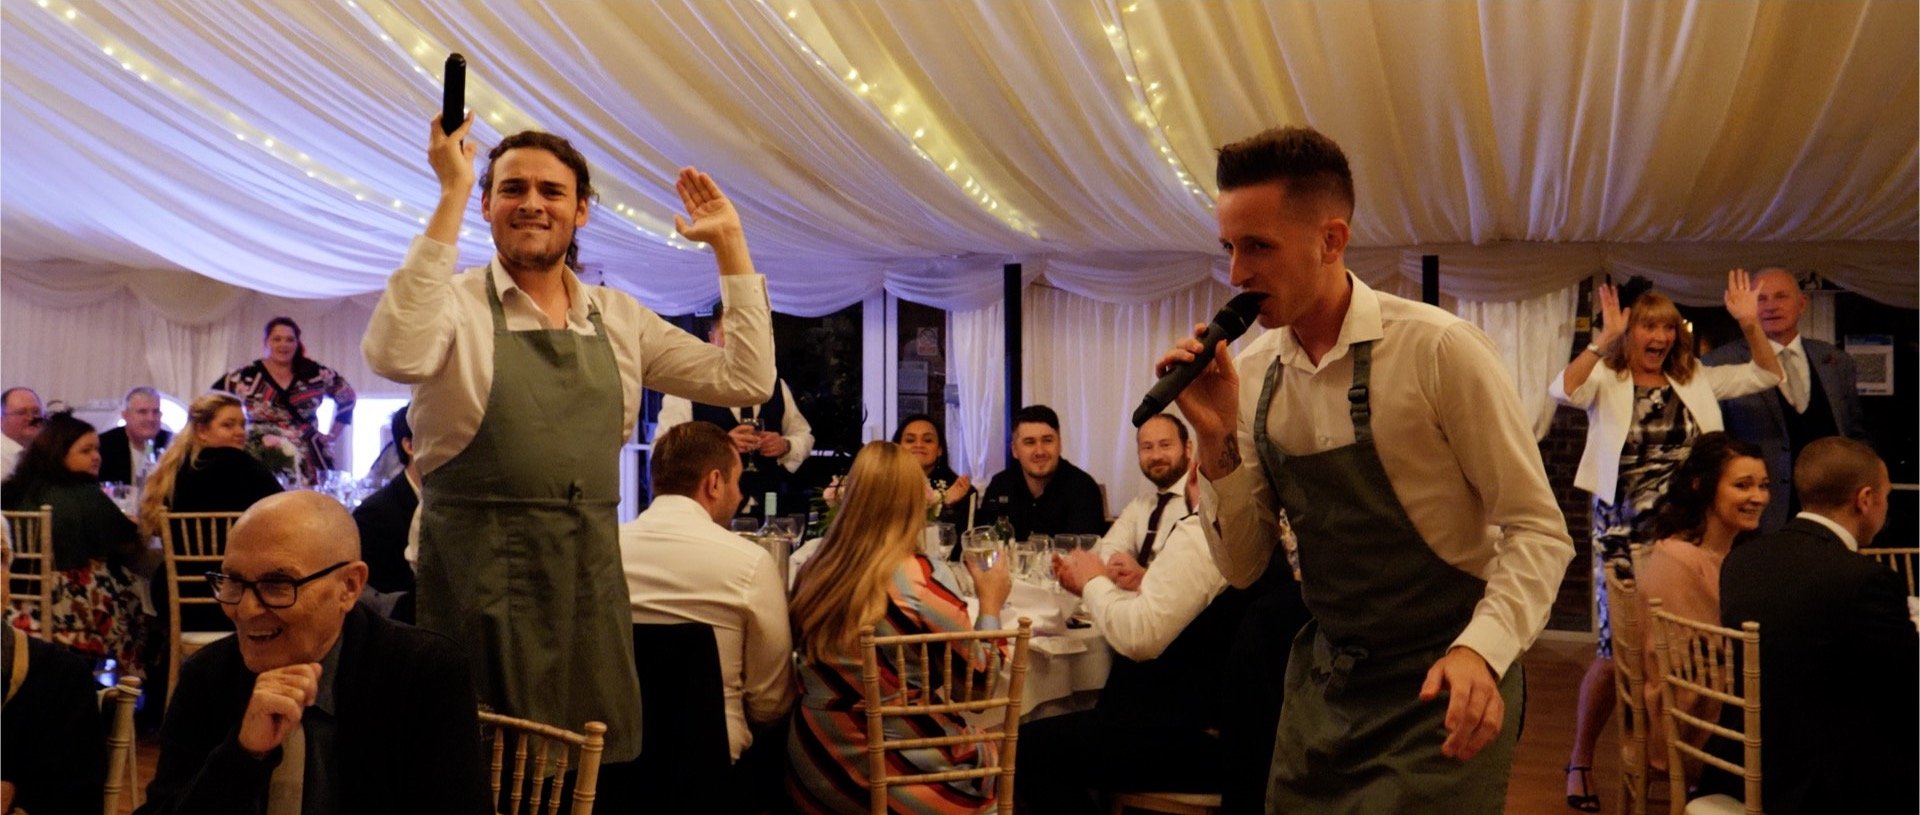 Singing waiters wedding video Essex.jpg